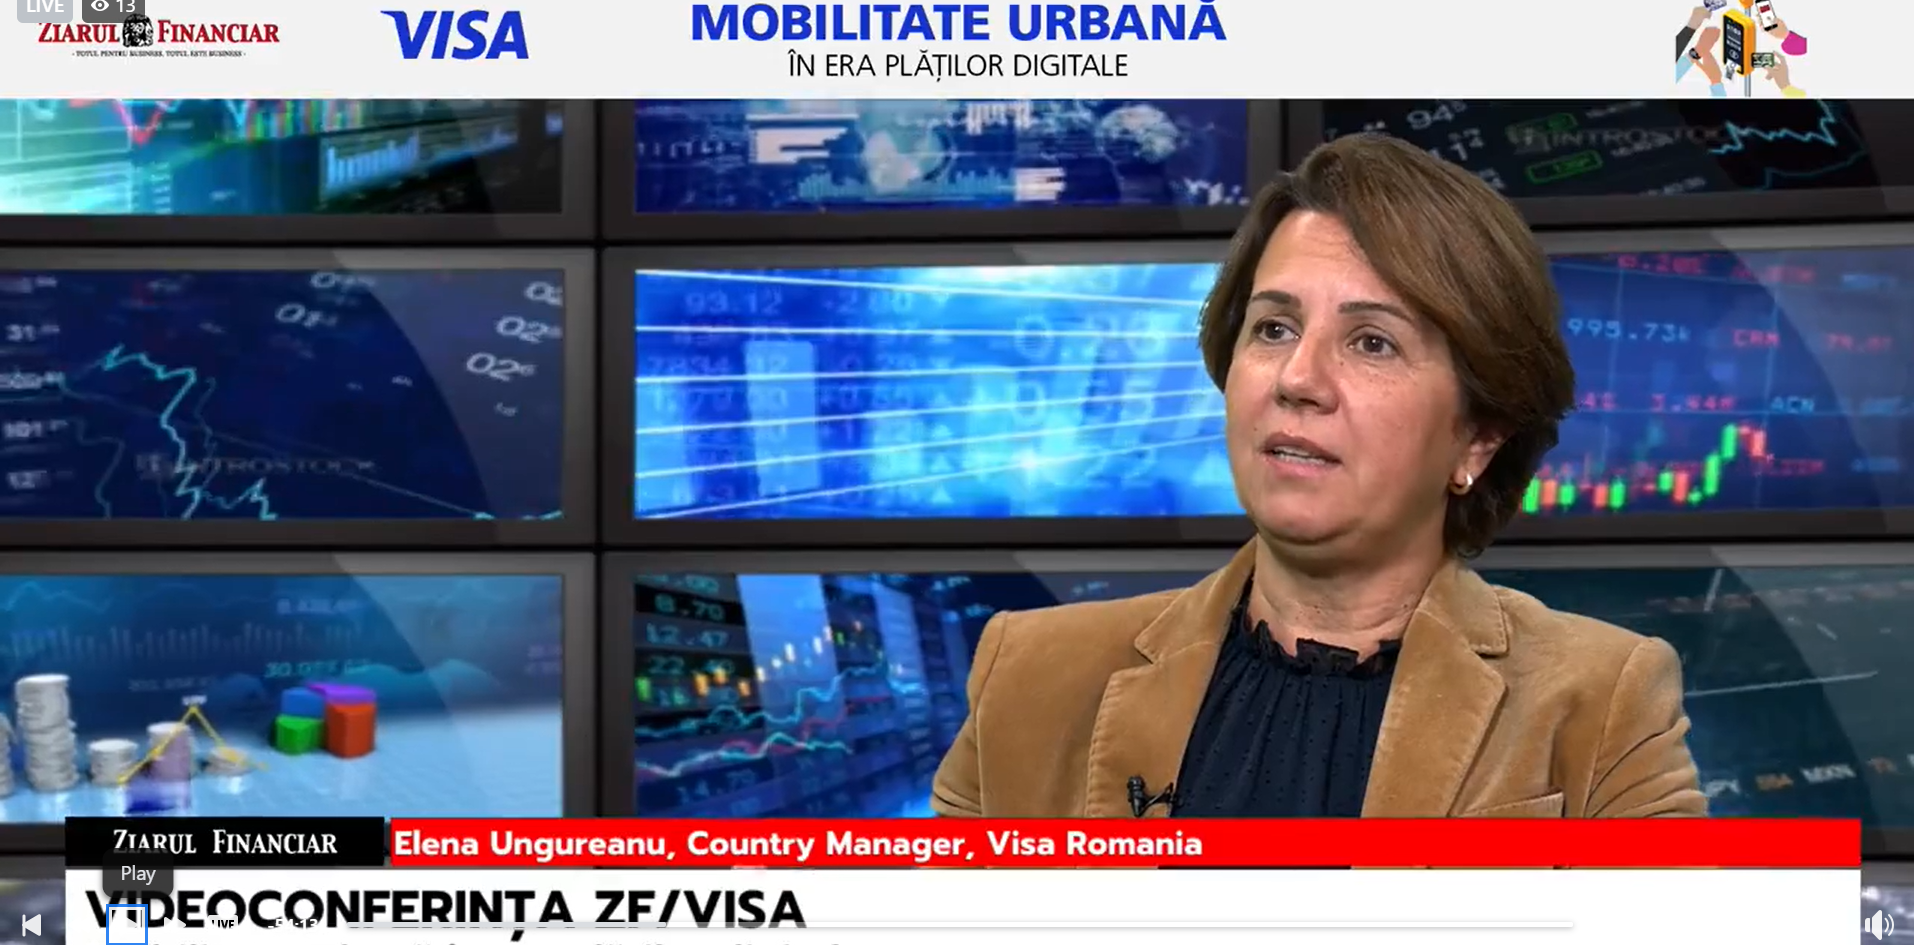 Elena Ungureanu, Visa Romania: Numărul de tranzacţii cu cardul în mijloacele de transport în comun creşte de două ori mai repede decât numărul de tranzacţii totale la nivel de ţară